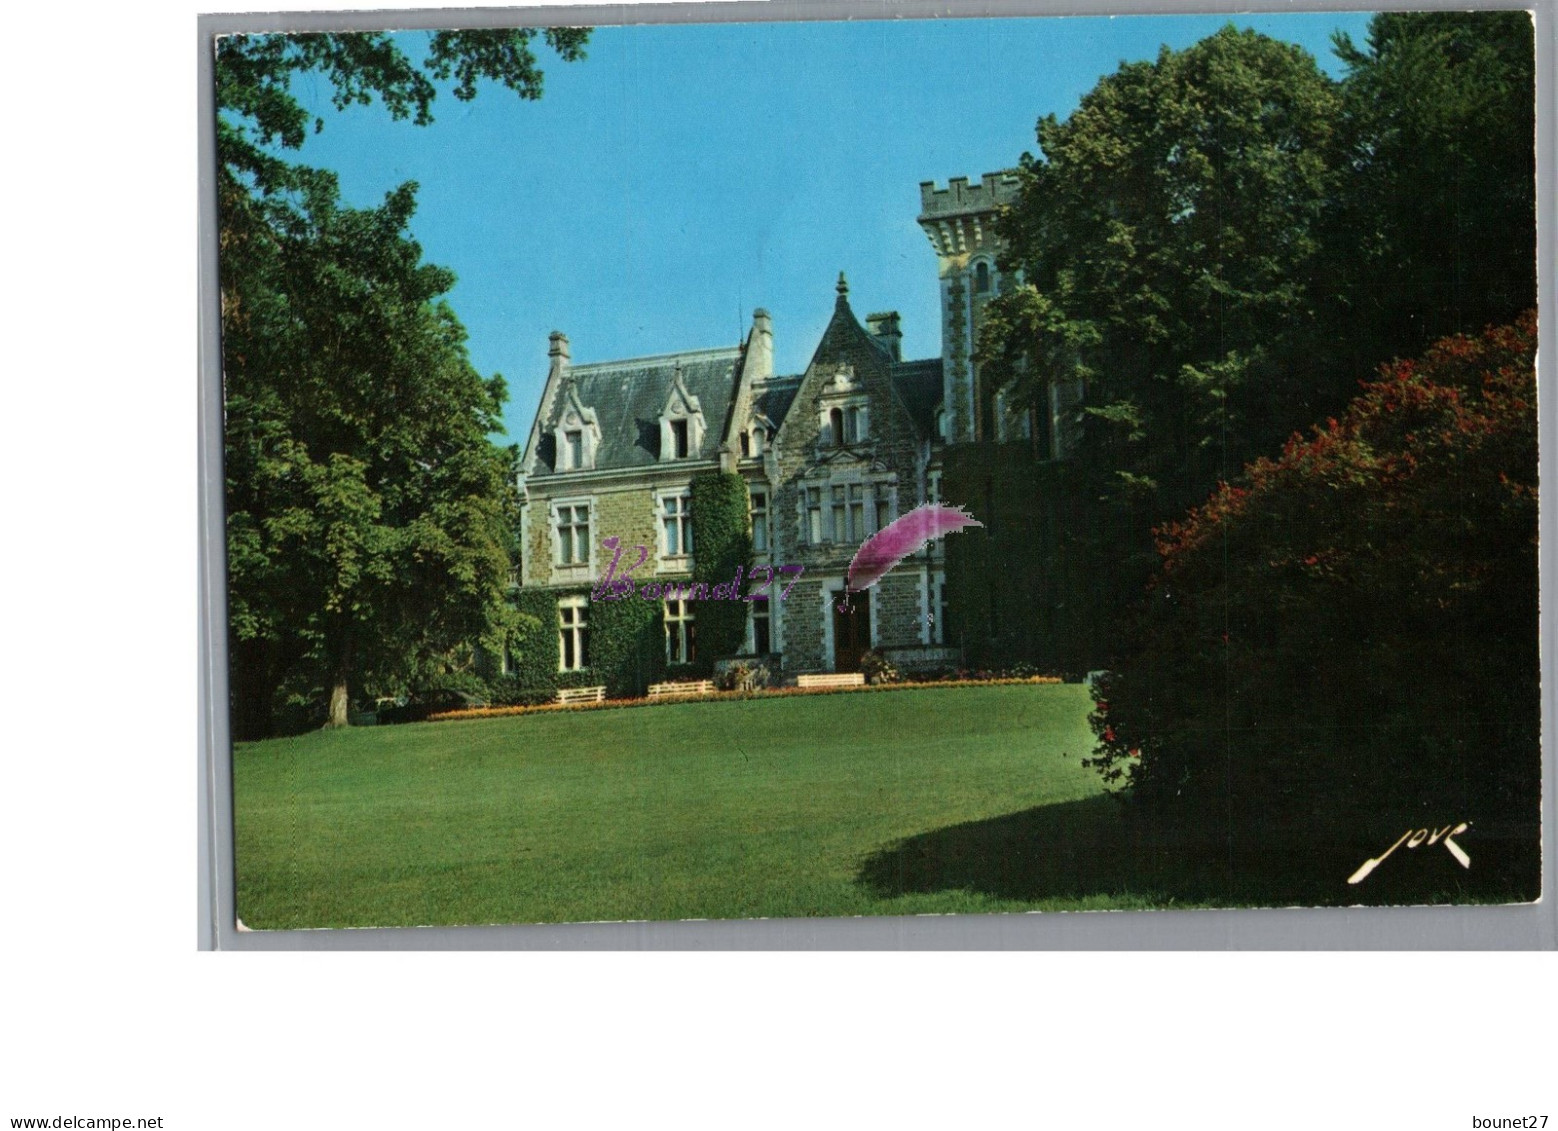 ORTHEZ 64 - Le Château De Preville Clinique  - Orthez